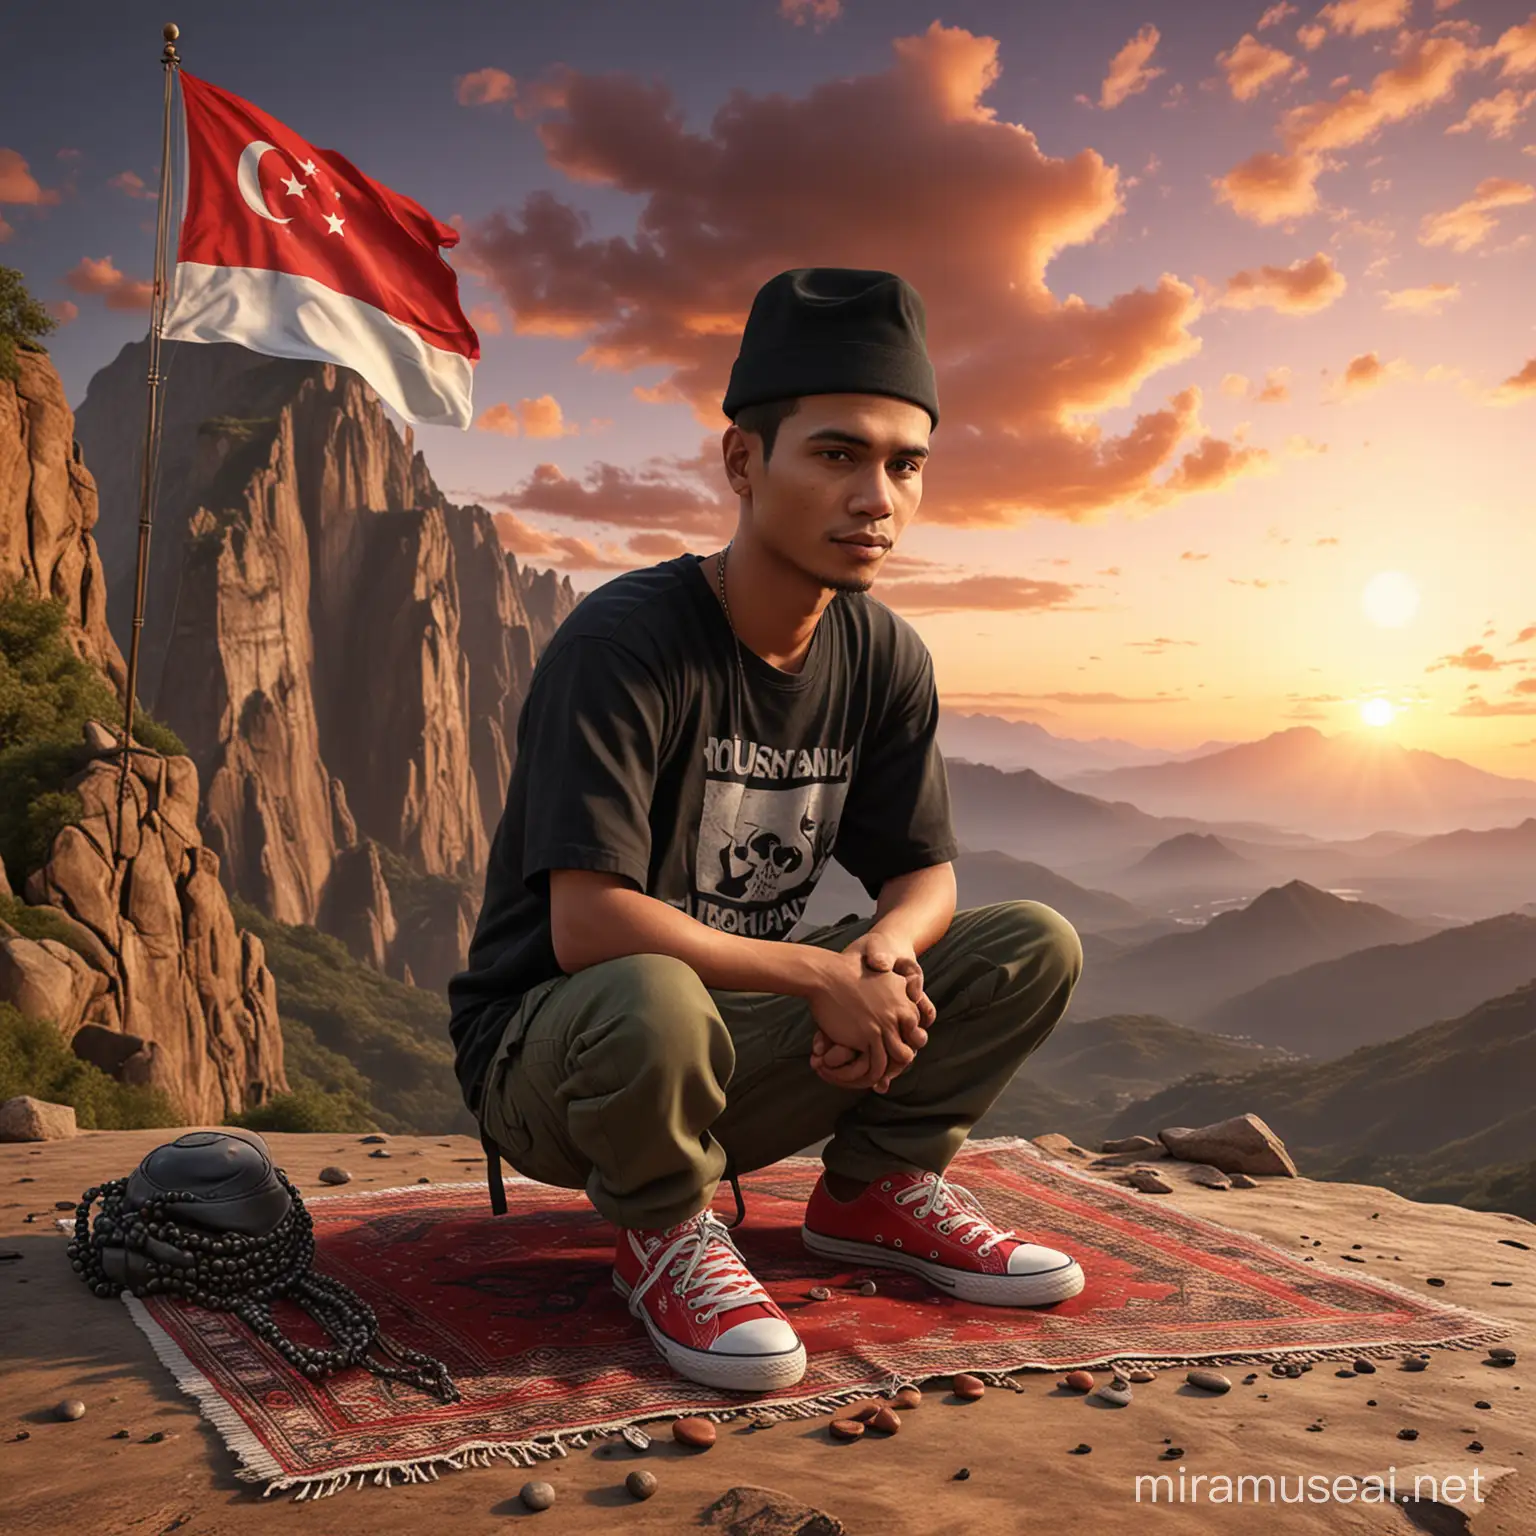 karikatur 3D realistis, kepala besar, pria Indonesia dengan wajah lonjong bersih, usia 25 tahun, pakai peci hitam, mengenakan kaos casual bertuliskan 'Yousufe', mengenakan celana kargo tentara dan sepatu red converse, duduk di atas tebing tinggi dengan sajadah, tasbih, al-Qur'an, dan bendera Indonesia, latar belakang pegunungan yang indah dan awan warna warni saat matahari terbenam, sunset. Detail objek yang tinggi. super realistic HD